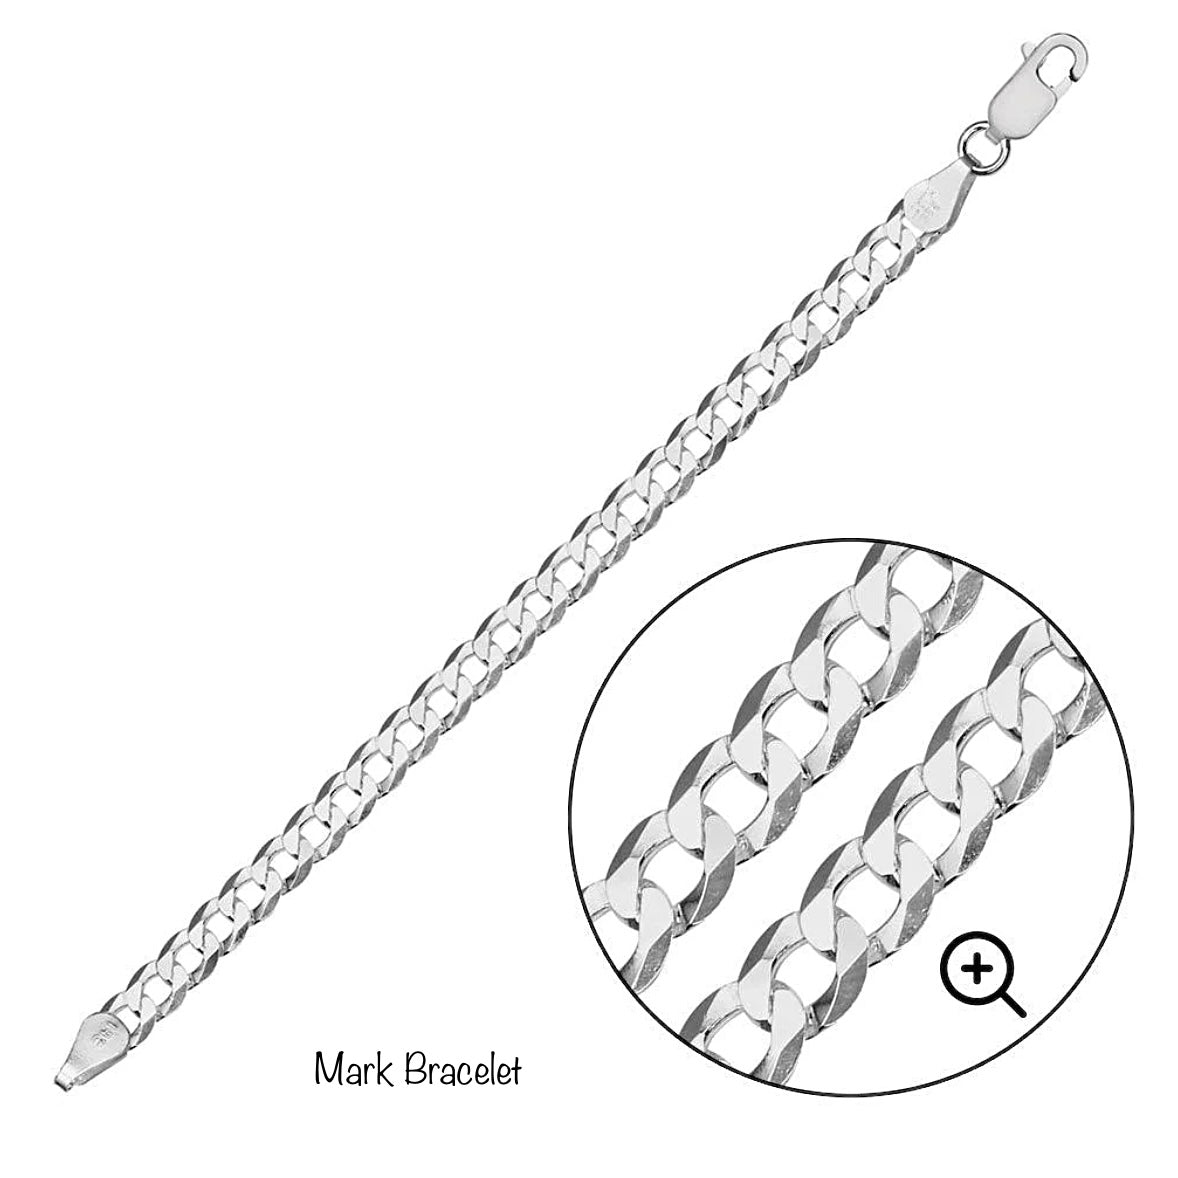 Mark Bracelet 8"